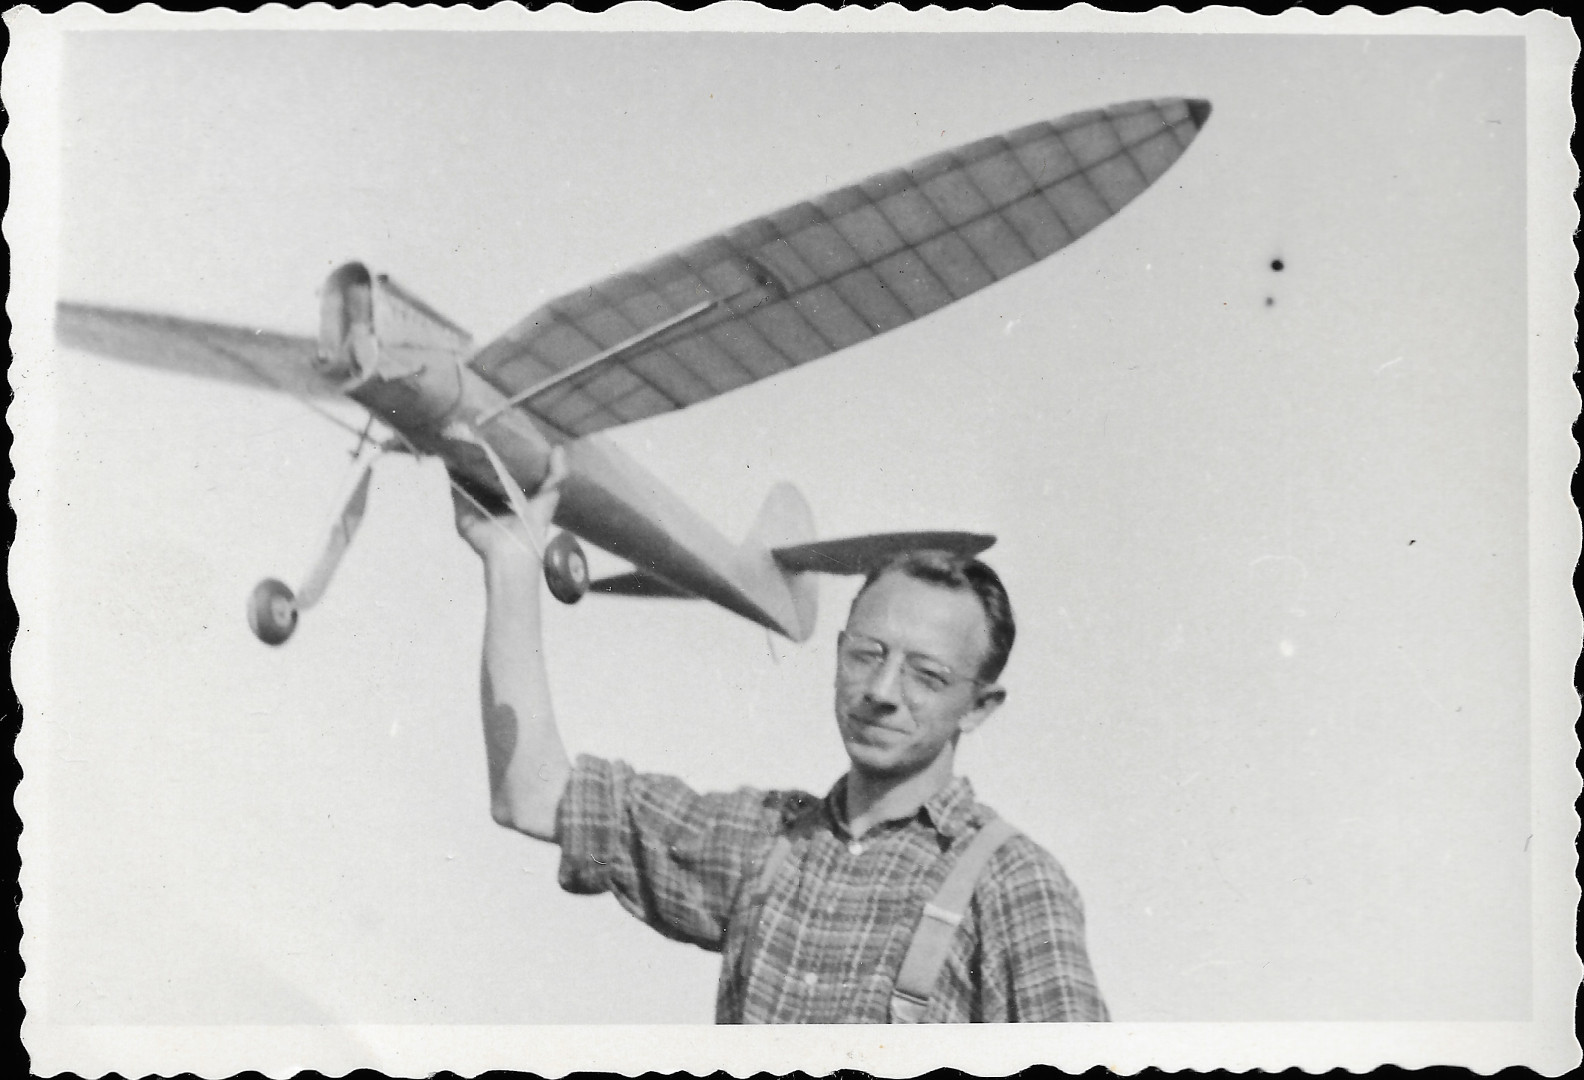 Na ernobl fotografii nevaln kvality je model vypoutjc motorov model letadla.